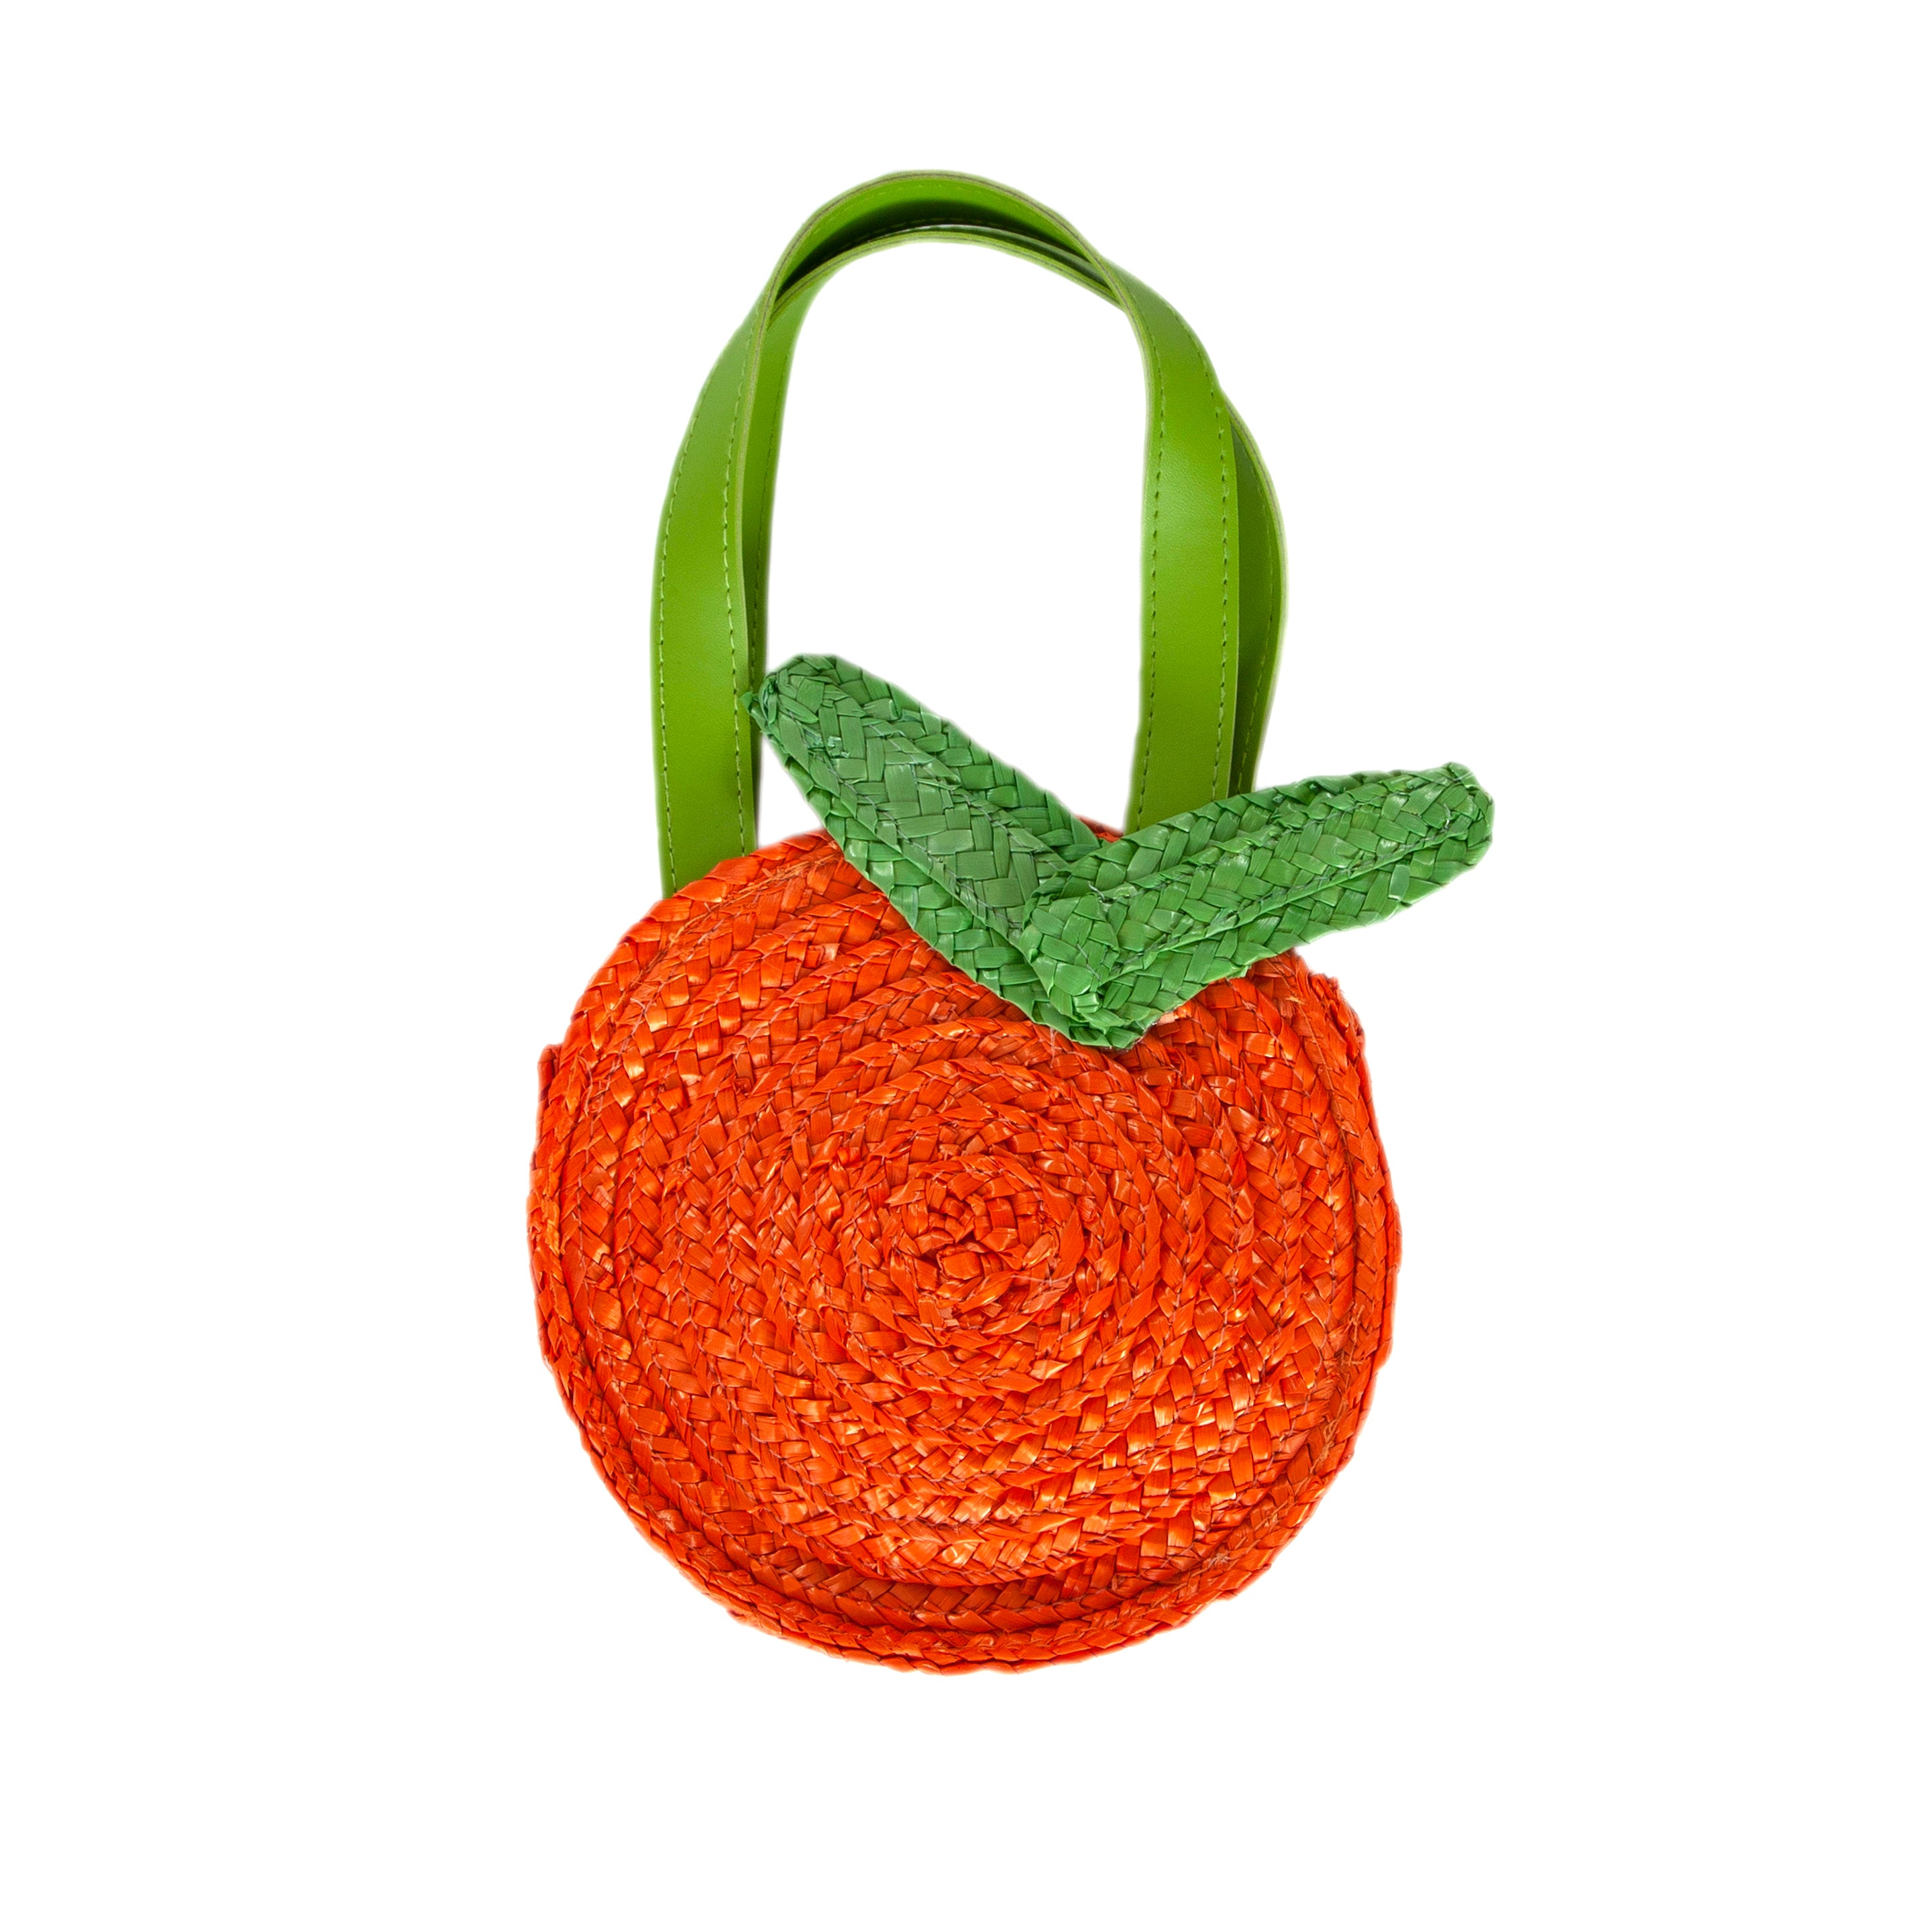 Acorn - Clementine Straw Bag - Orange/Green